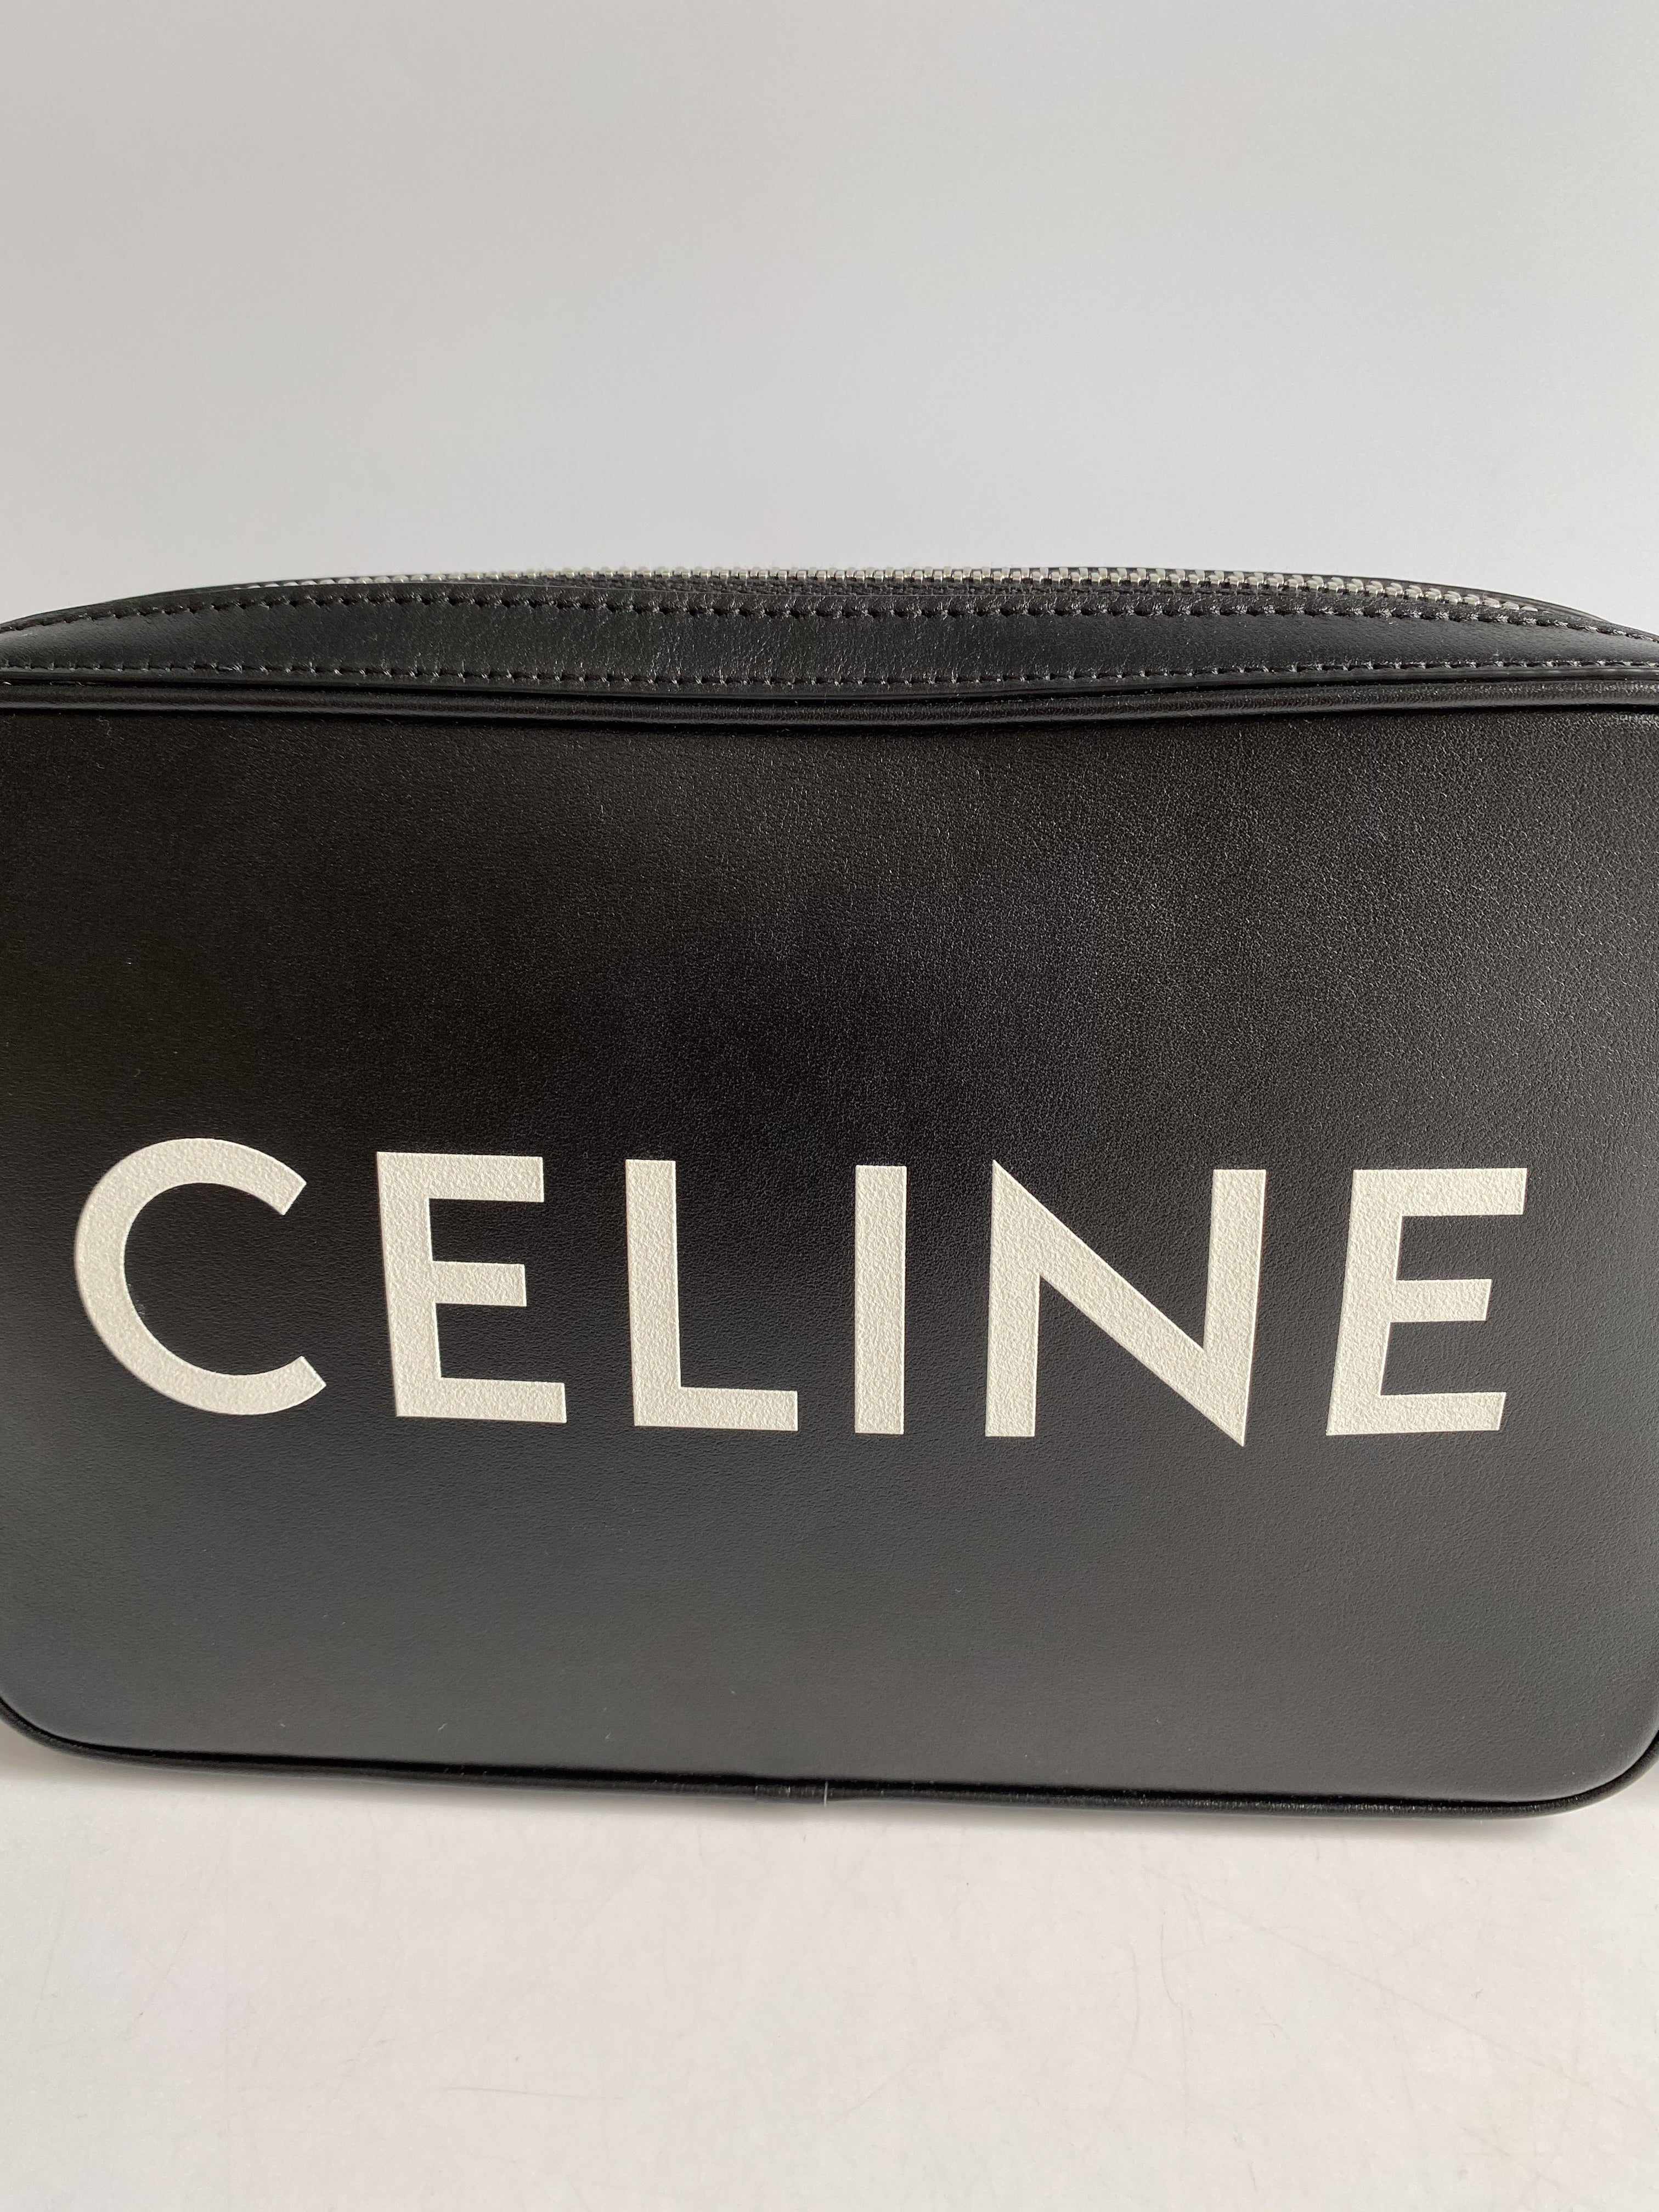 Celine Black Calfskin Logo Messenger Bag Unisex